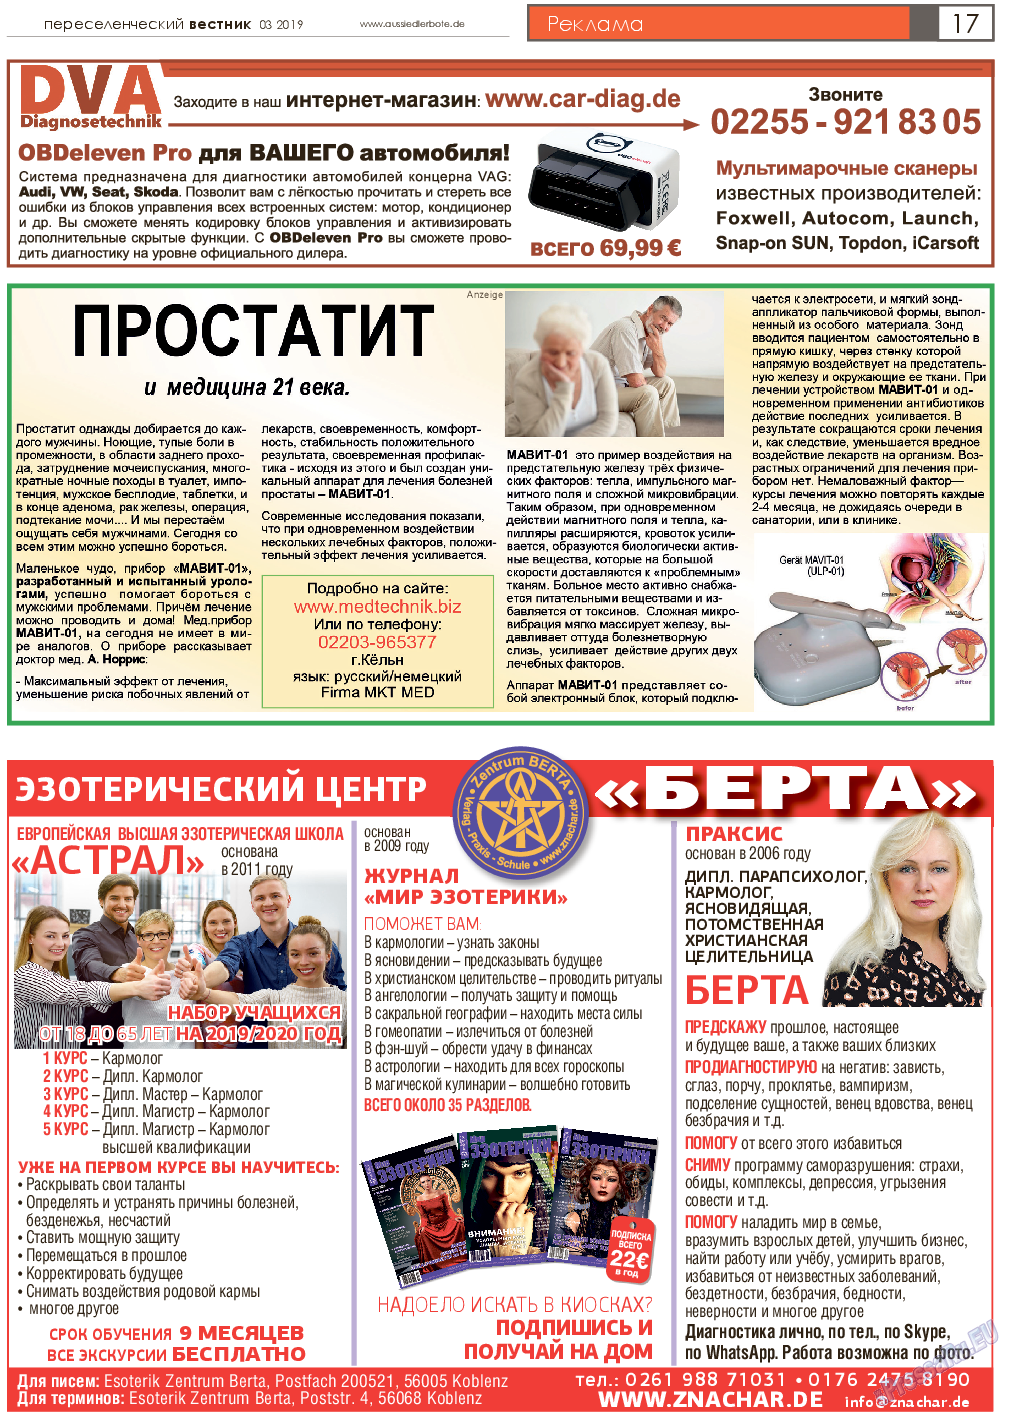 Переселенческий вестник, газета. 2019 №3 стр.17